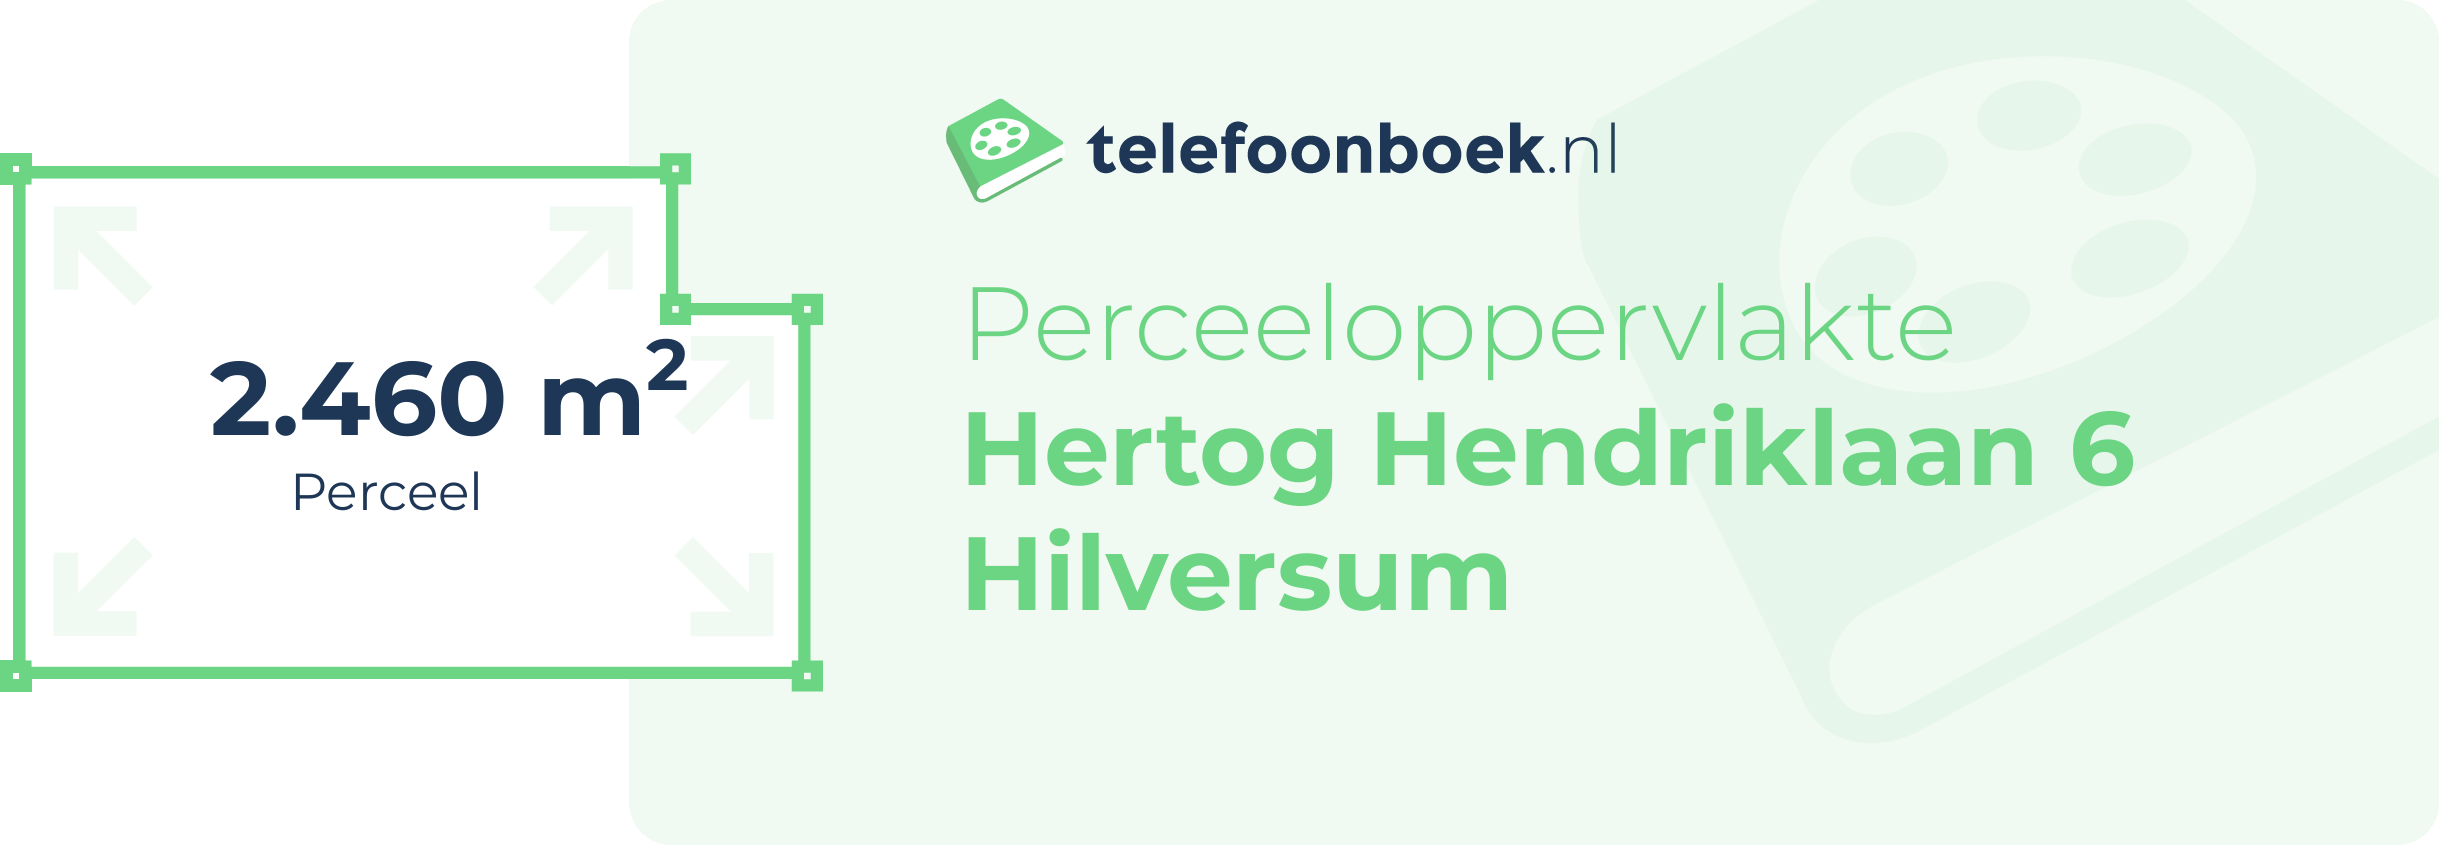 Perceeloppervlakte Hertog Hendriklaan 6 Hilversum